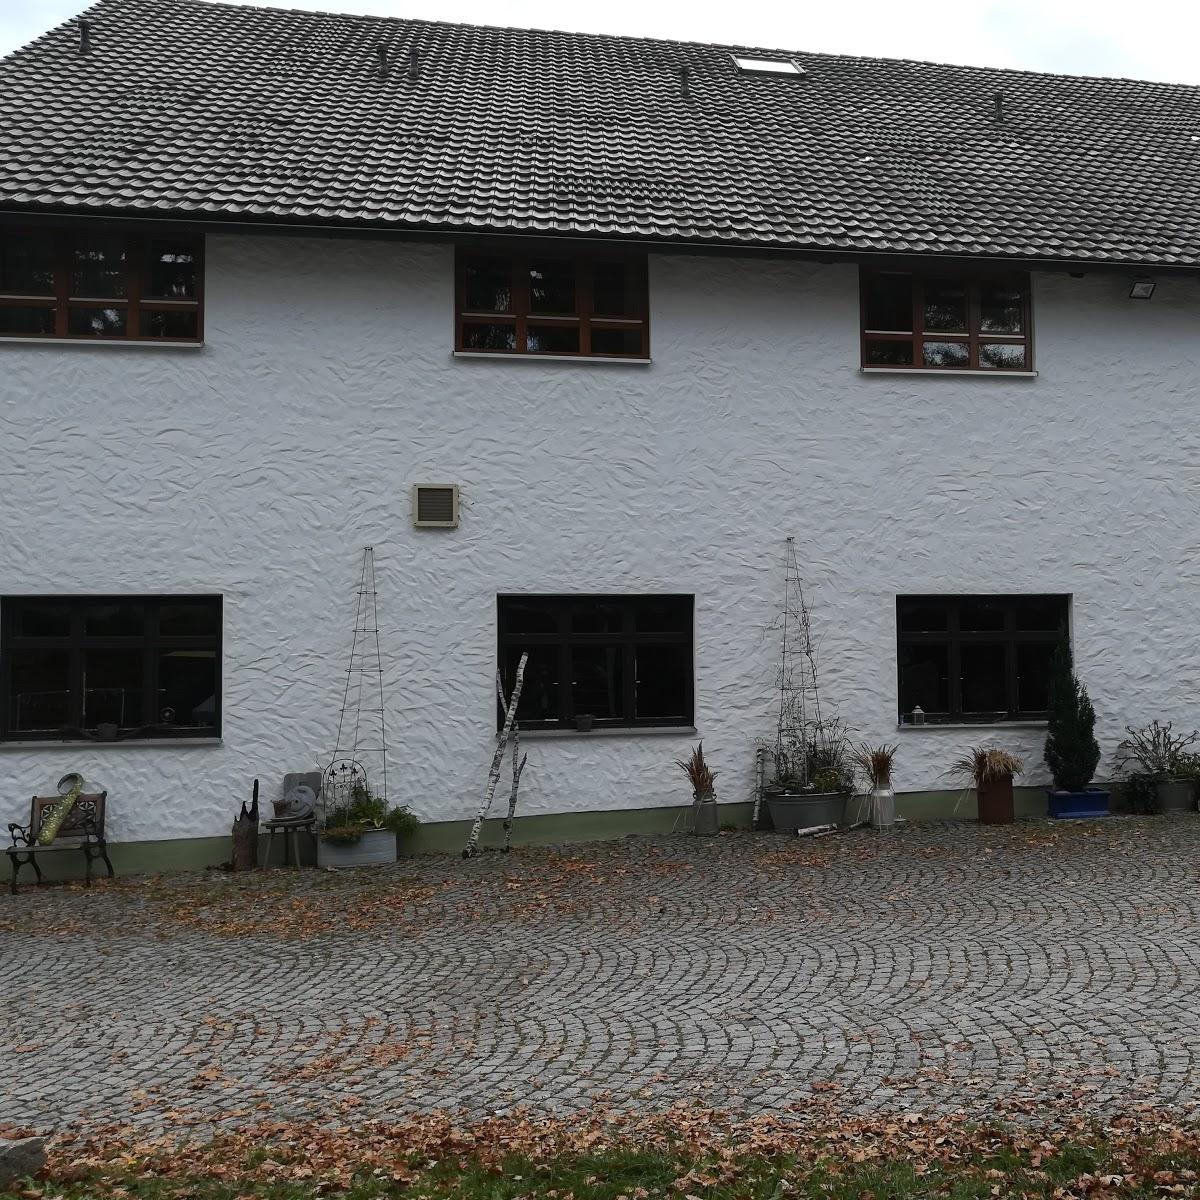 Restaurant "Gasthof Hammermühle" in Fichtenau